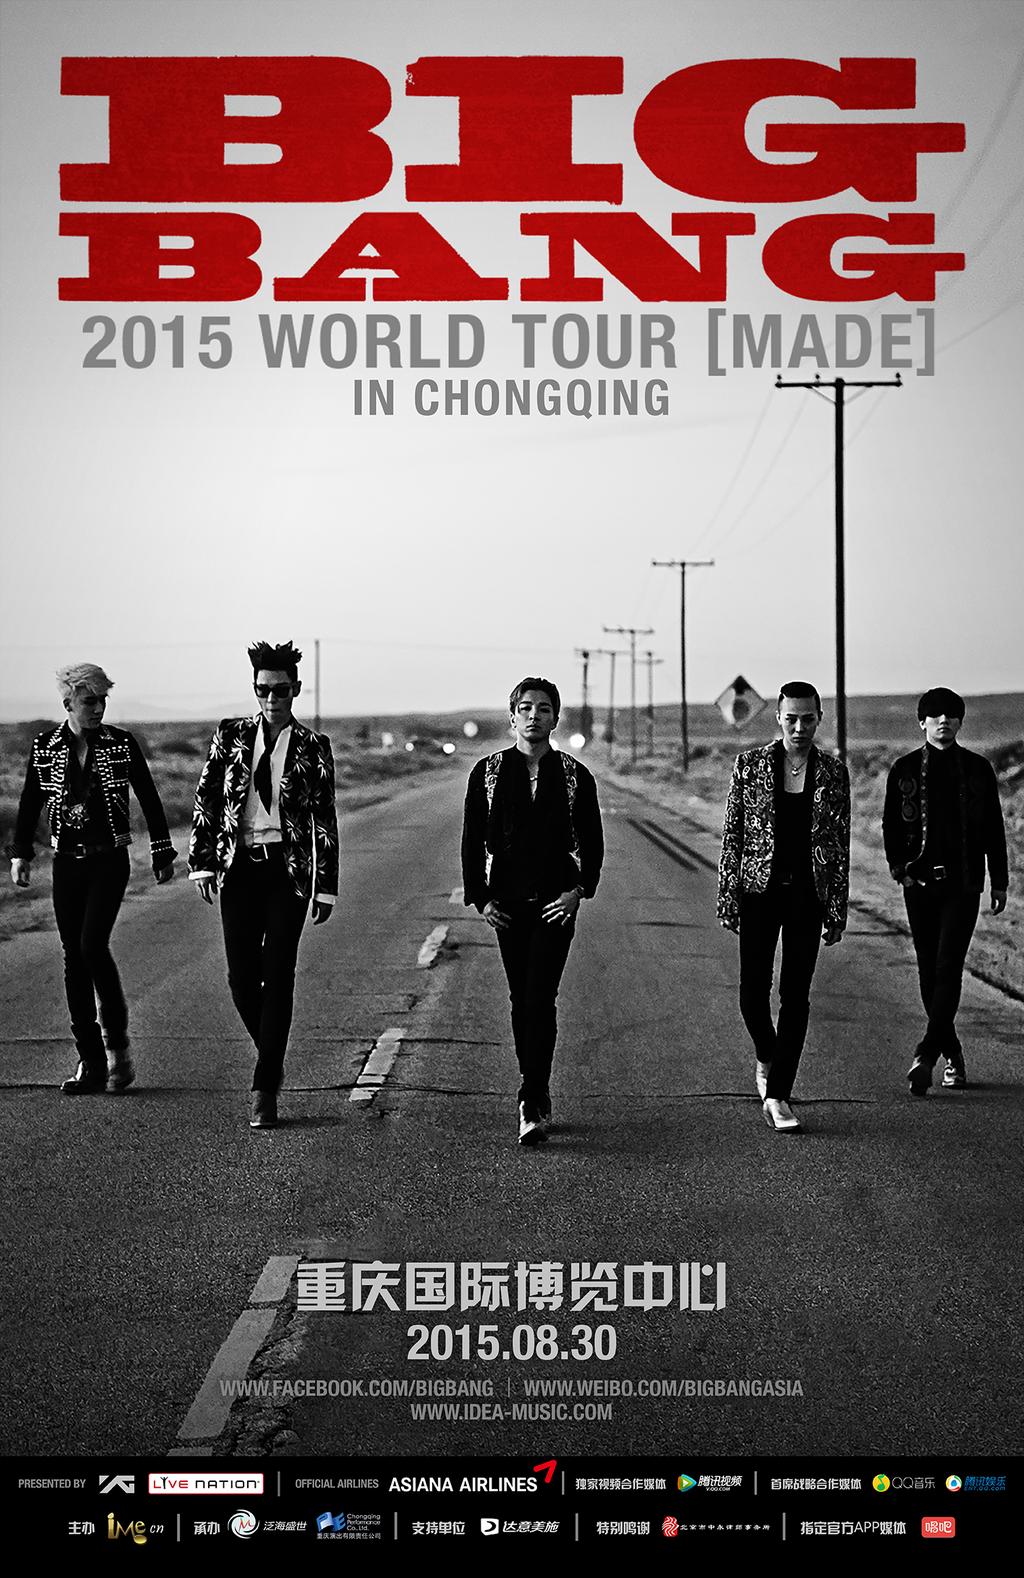 BIGBANG World Tour Chongqing